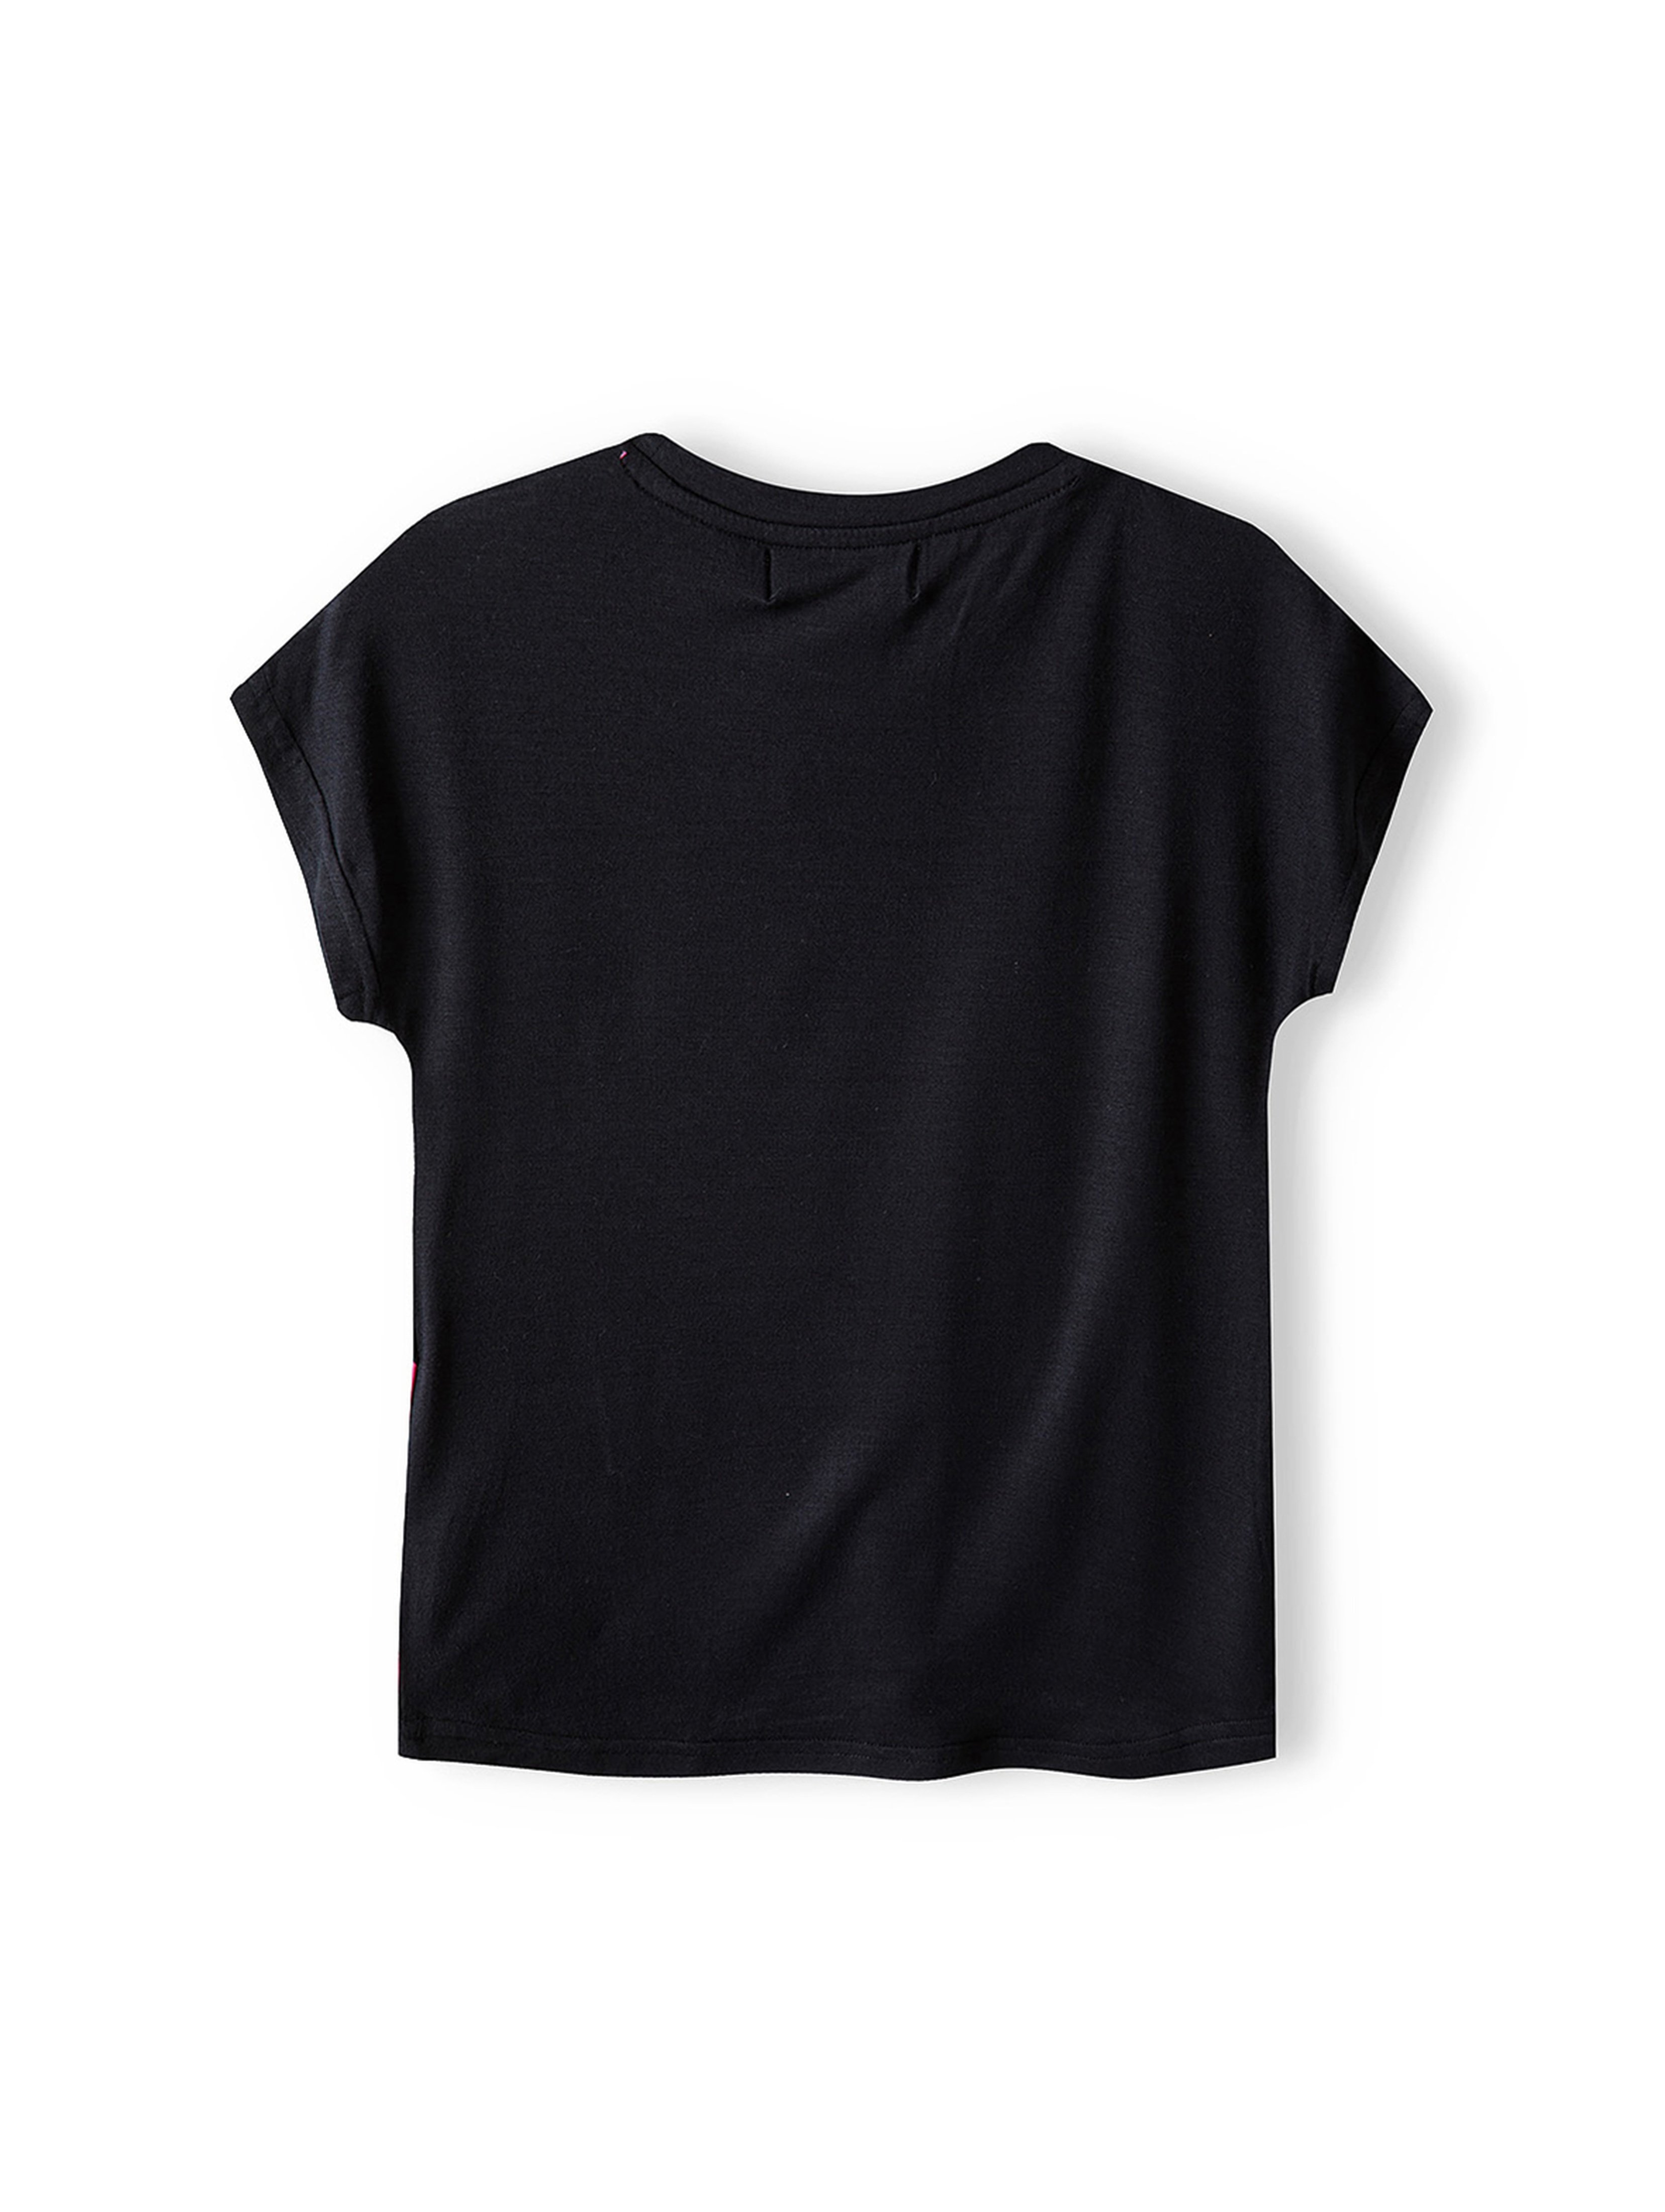 Czarna koszulka dla dziewczynki z nadrukiem